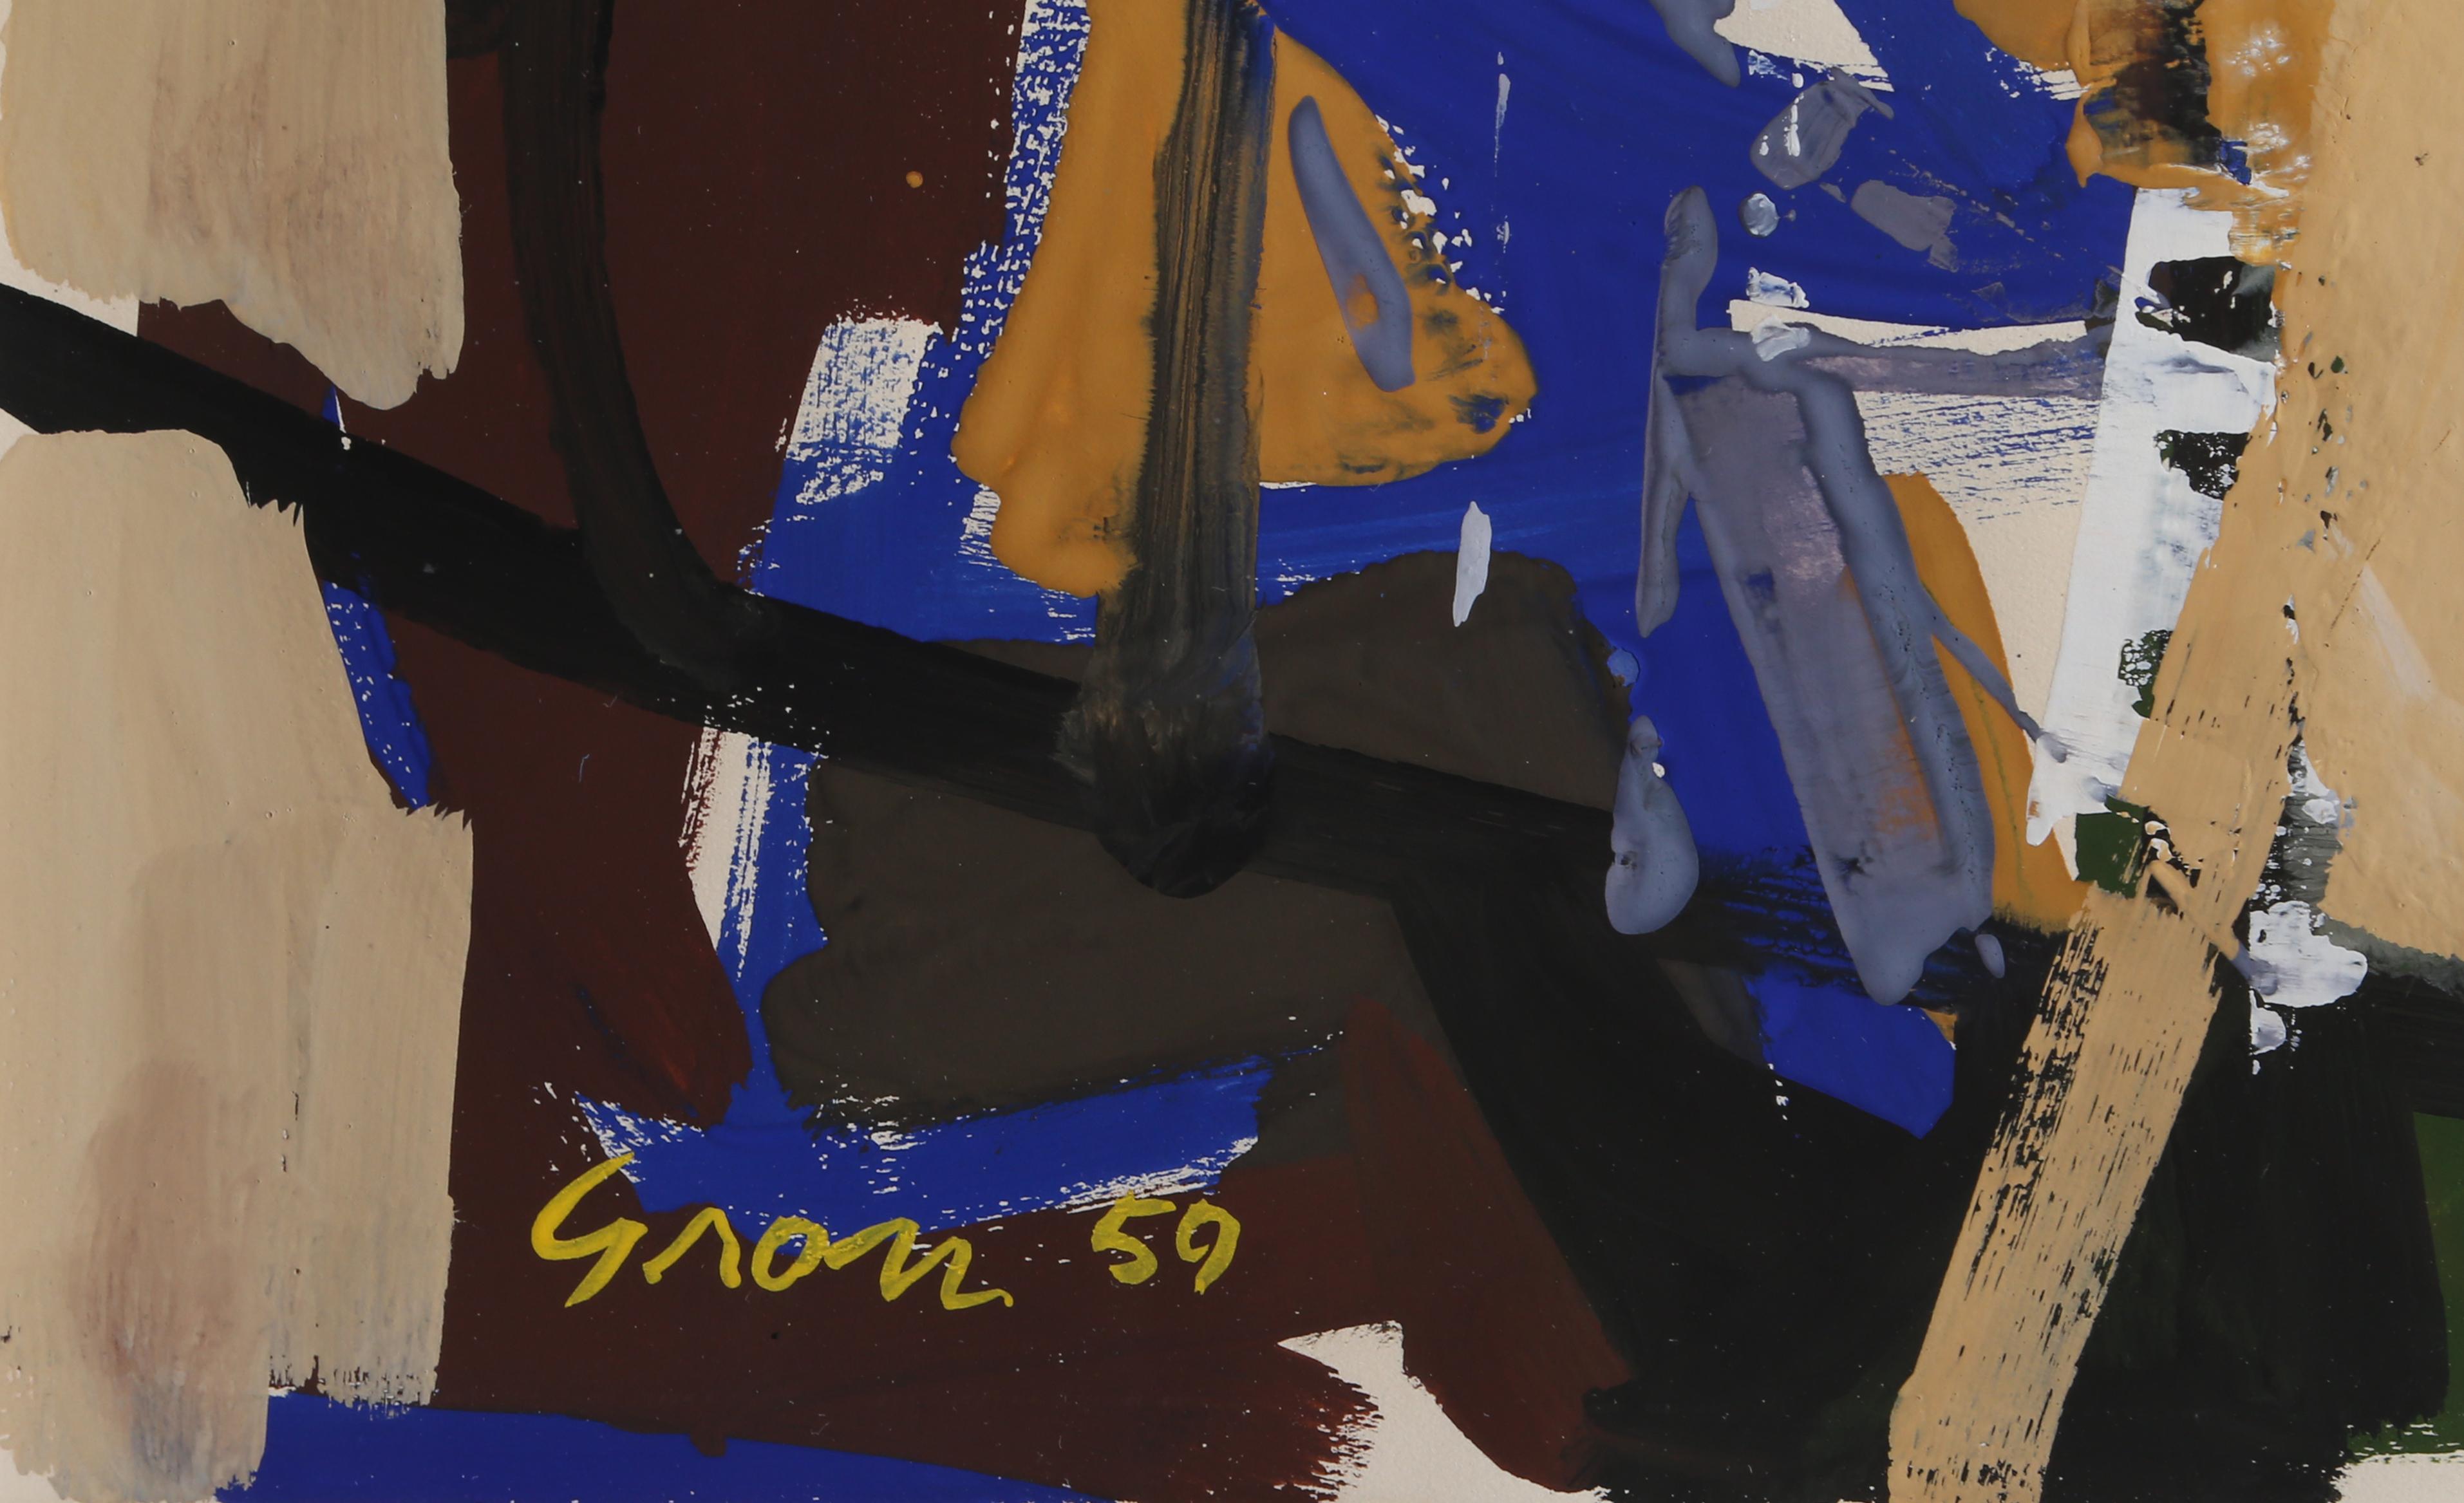 Ein abstraktes expressionistisches Gouache-Gemälde des amerikanischen Künstlers Sid Gross.

Datum: 1959
Gouache auf Papier, signiert und datiert unten rechts
Bildgröße: 18,5 x 12 Zoll
Rahmengröße: 28 x 22 Zoll